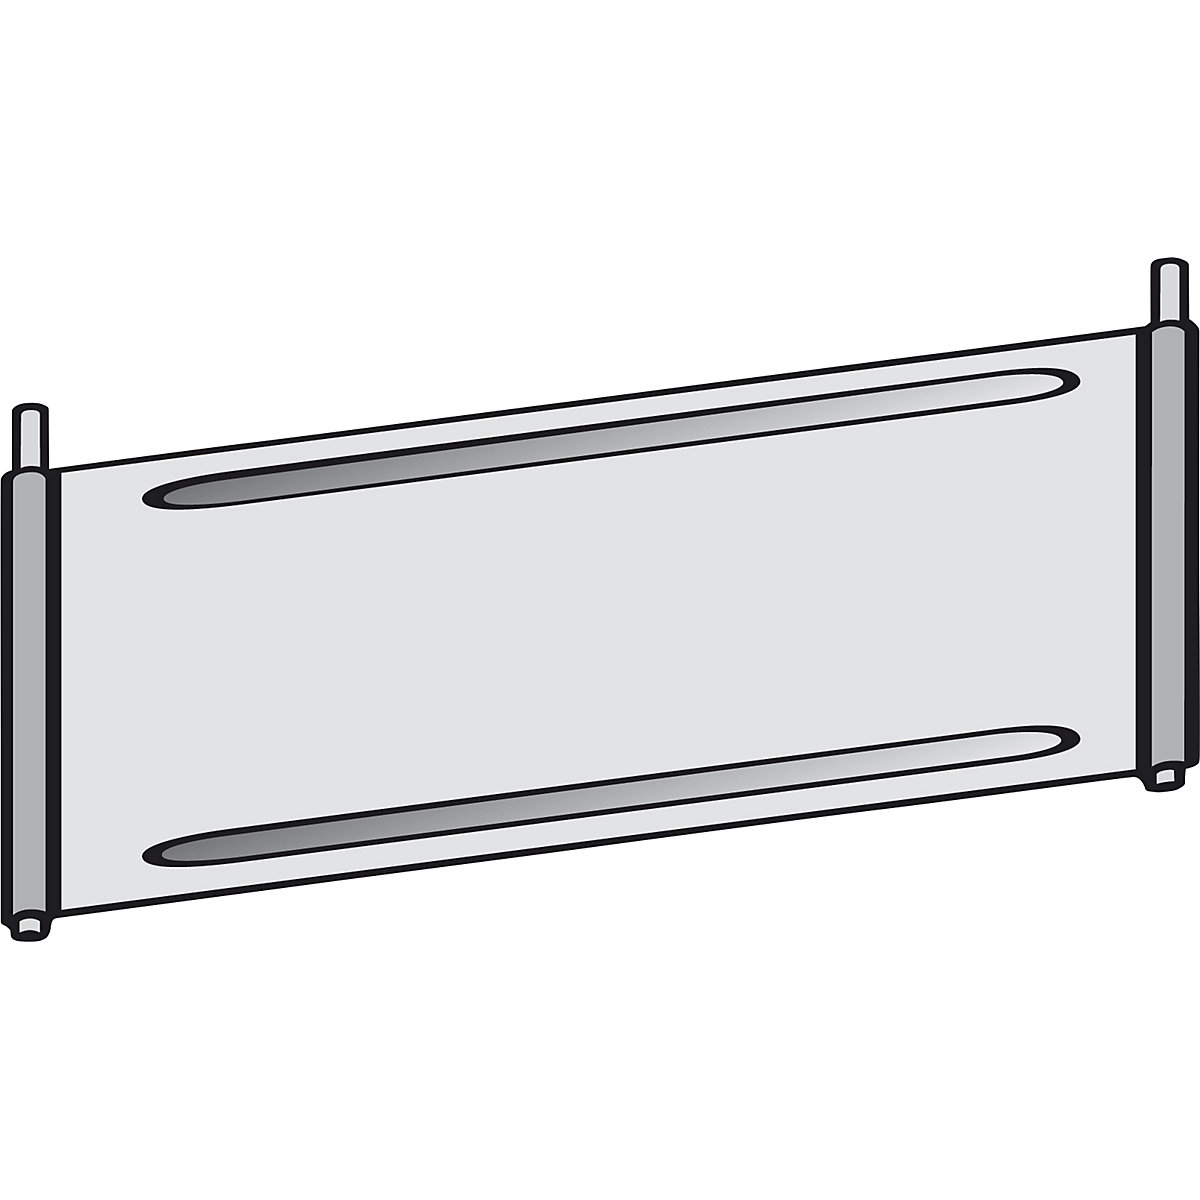 Trennblech für Fächer-Regal hofe, verzinkt, für Fachboden, BxT 1000 x 500 mm-1